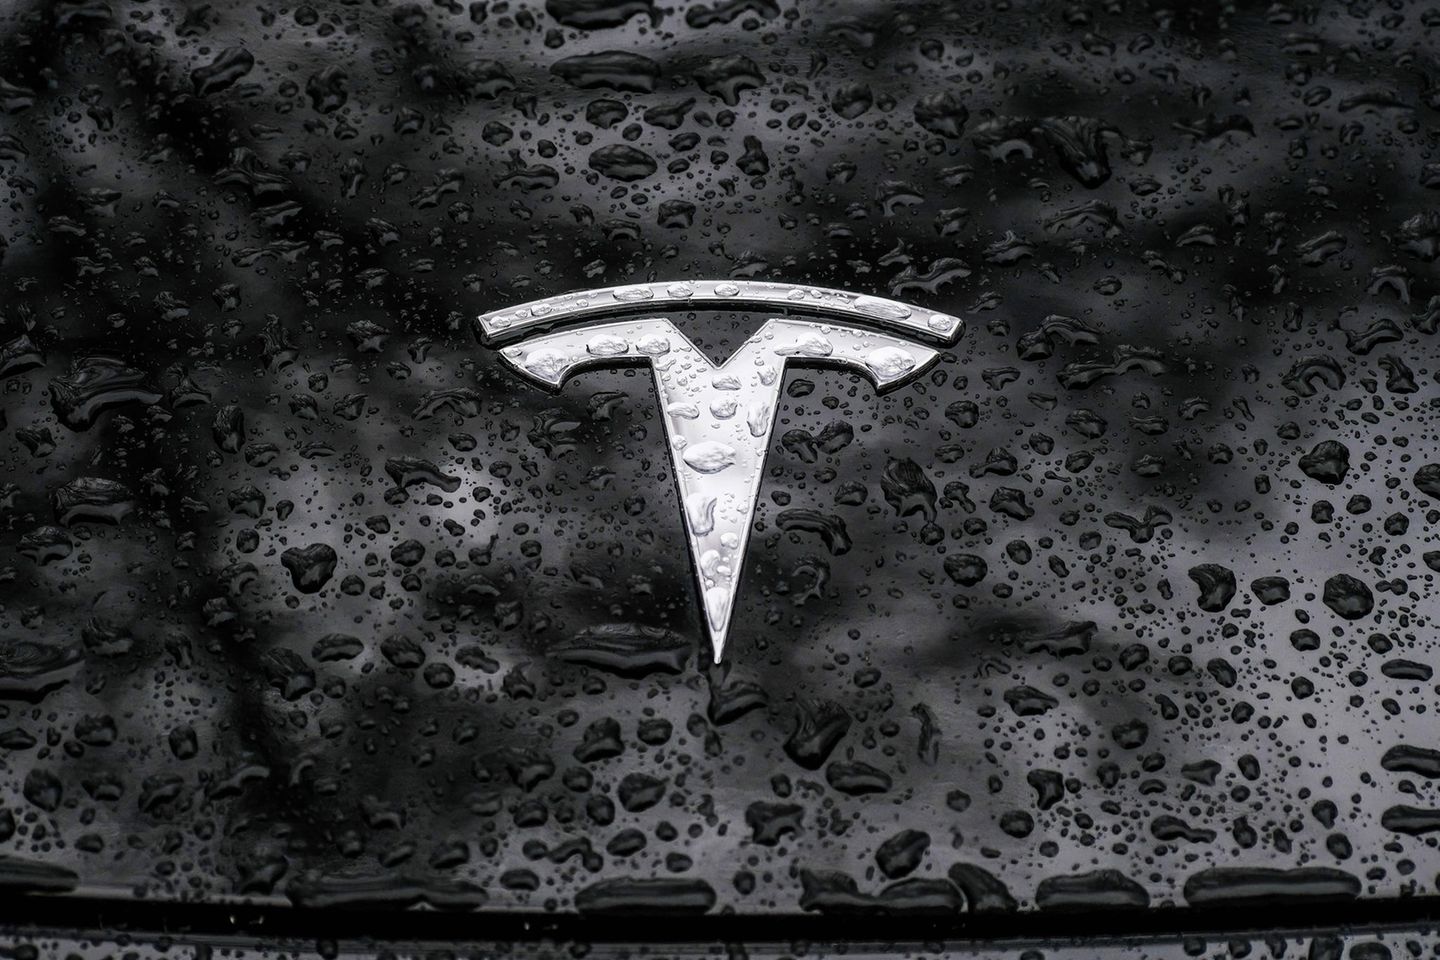 Tesla-Emblem im Regen